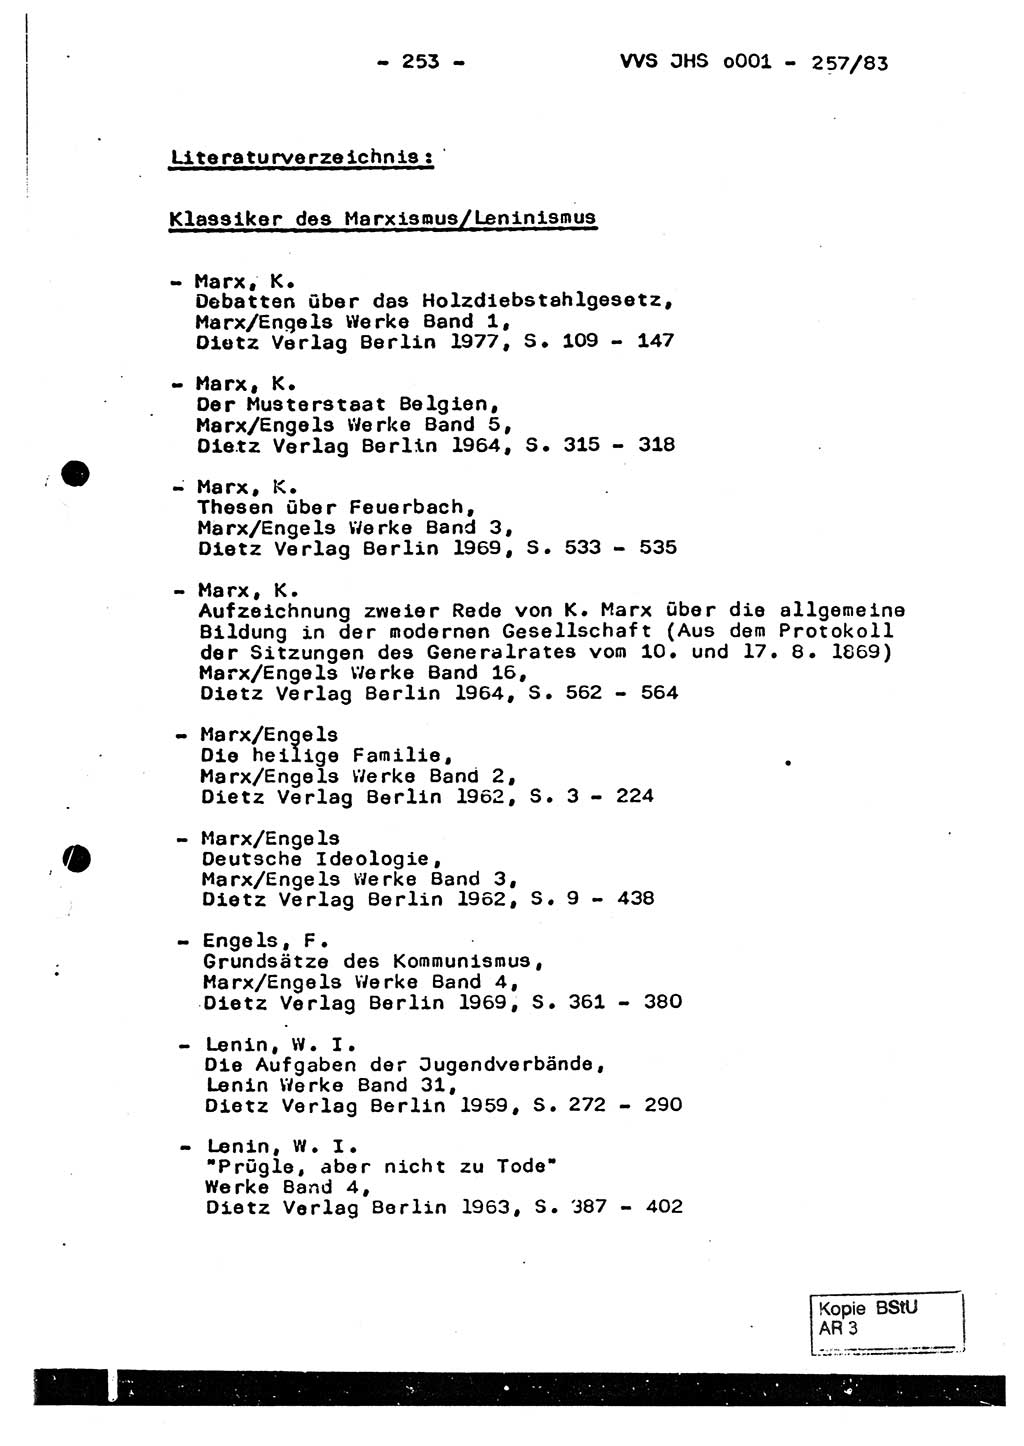 Dissertation, Oberst Helmut Lubas (BV Mdg.), Oberstleutnant Manfred Eschberger (HA IX), Oberleutnant Hans-Jürgen Ludwig (JHS), Ministerium für Staatssicherheit (MfS) [Deutsche Demokratische Republik (DDR)], Juristische Hochschule (JHS), Vertrauliche Verschlußsache (VVS) o001-257/83, Potsdam 1983, Seite 253 (Diss. MfS DDR JHS VVS o001-257/83 1983, S. 253)